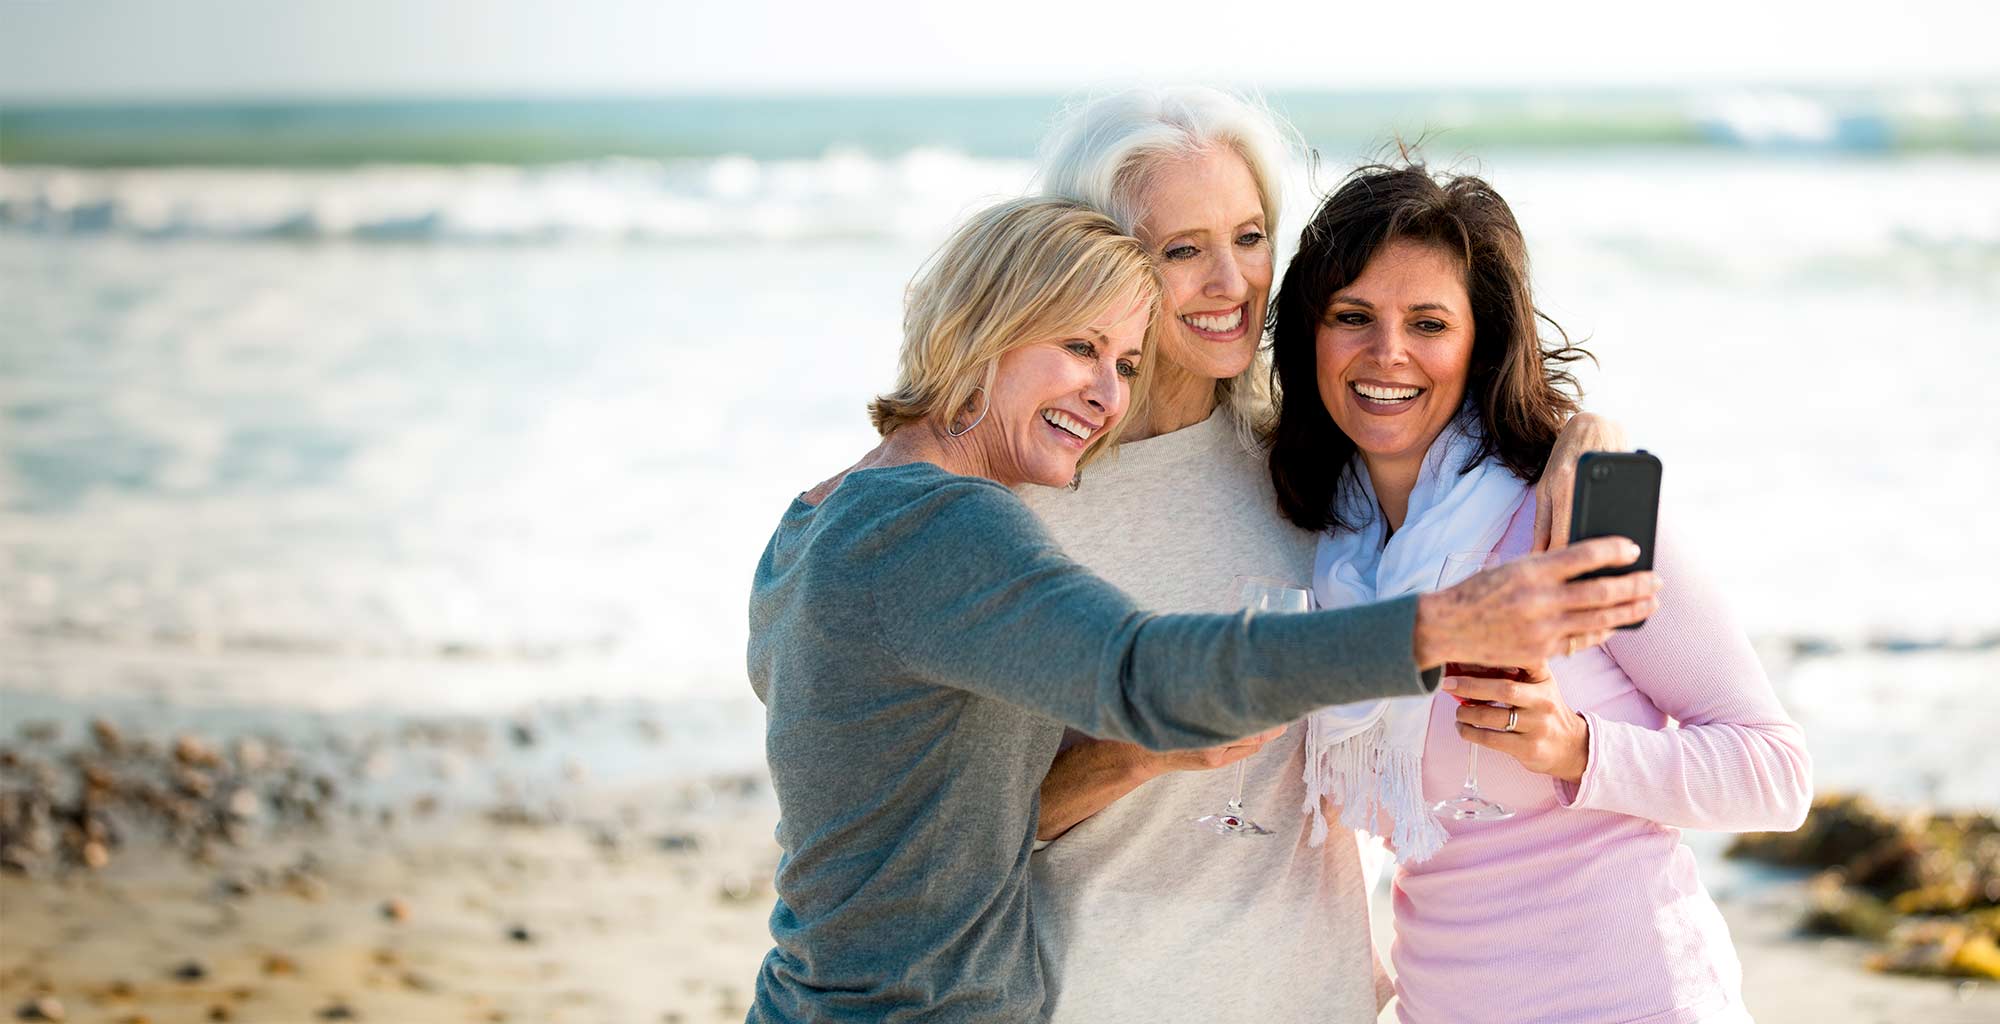 3 women taking a selfie on the beach